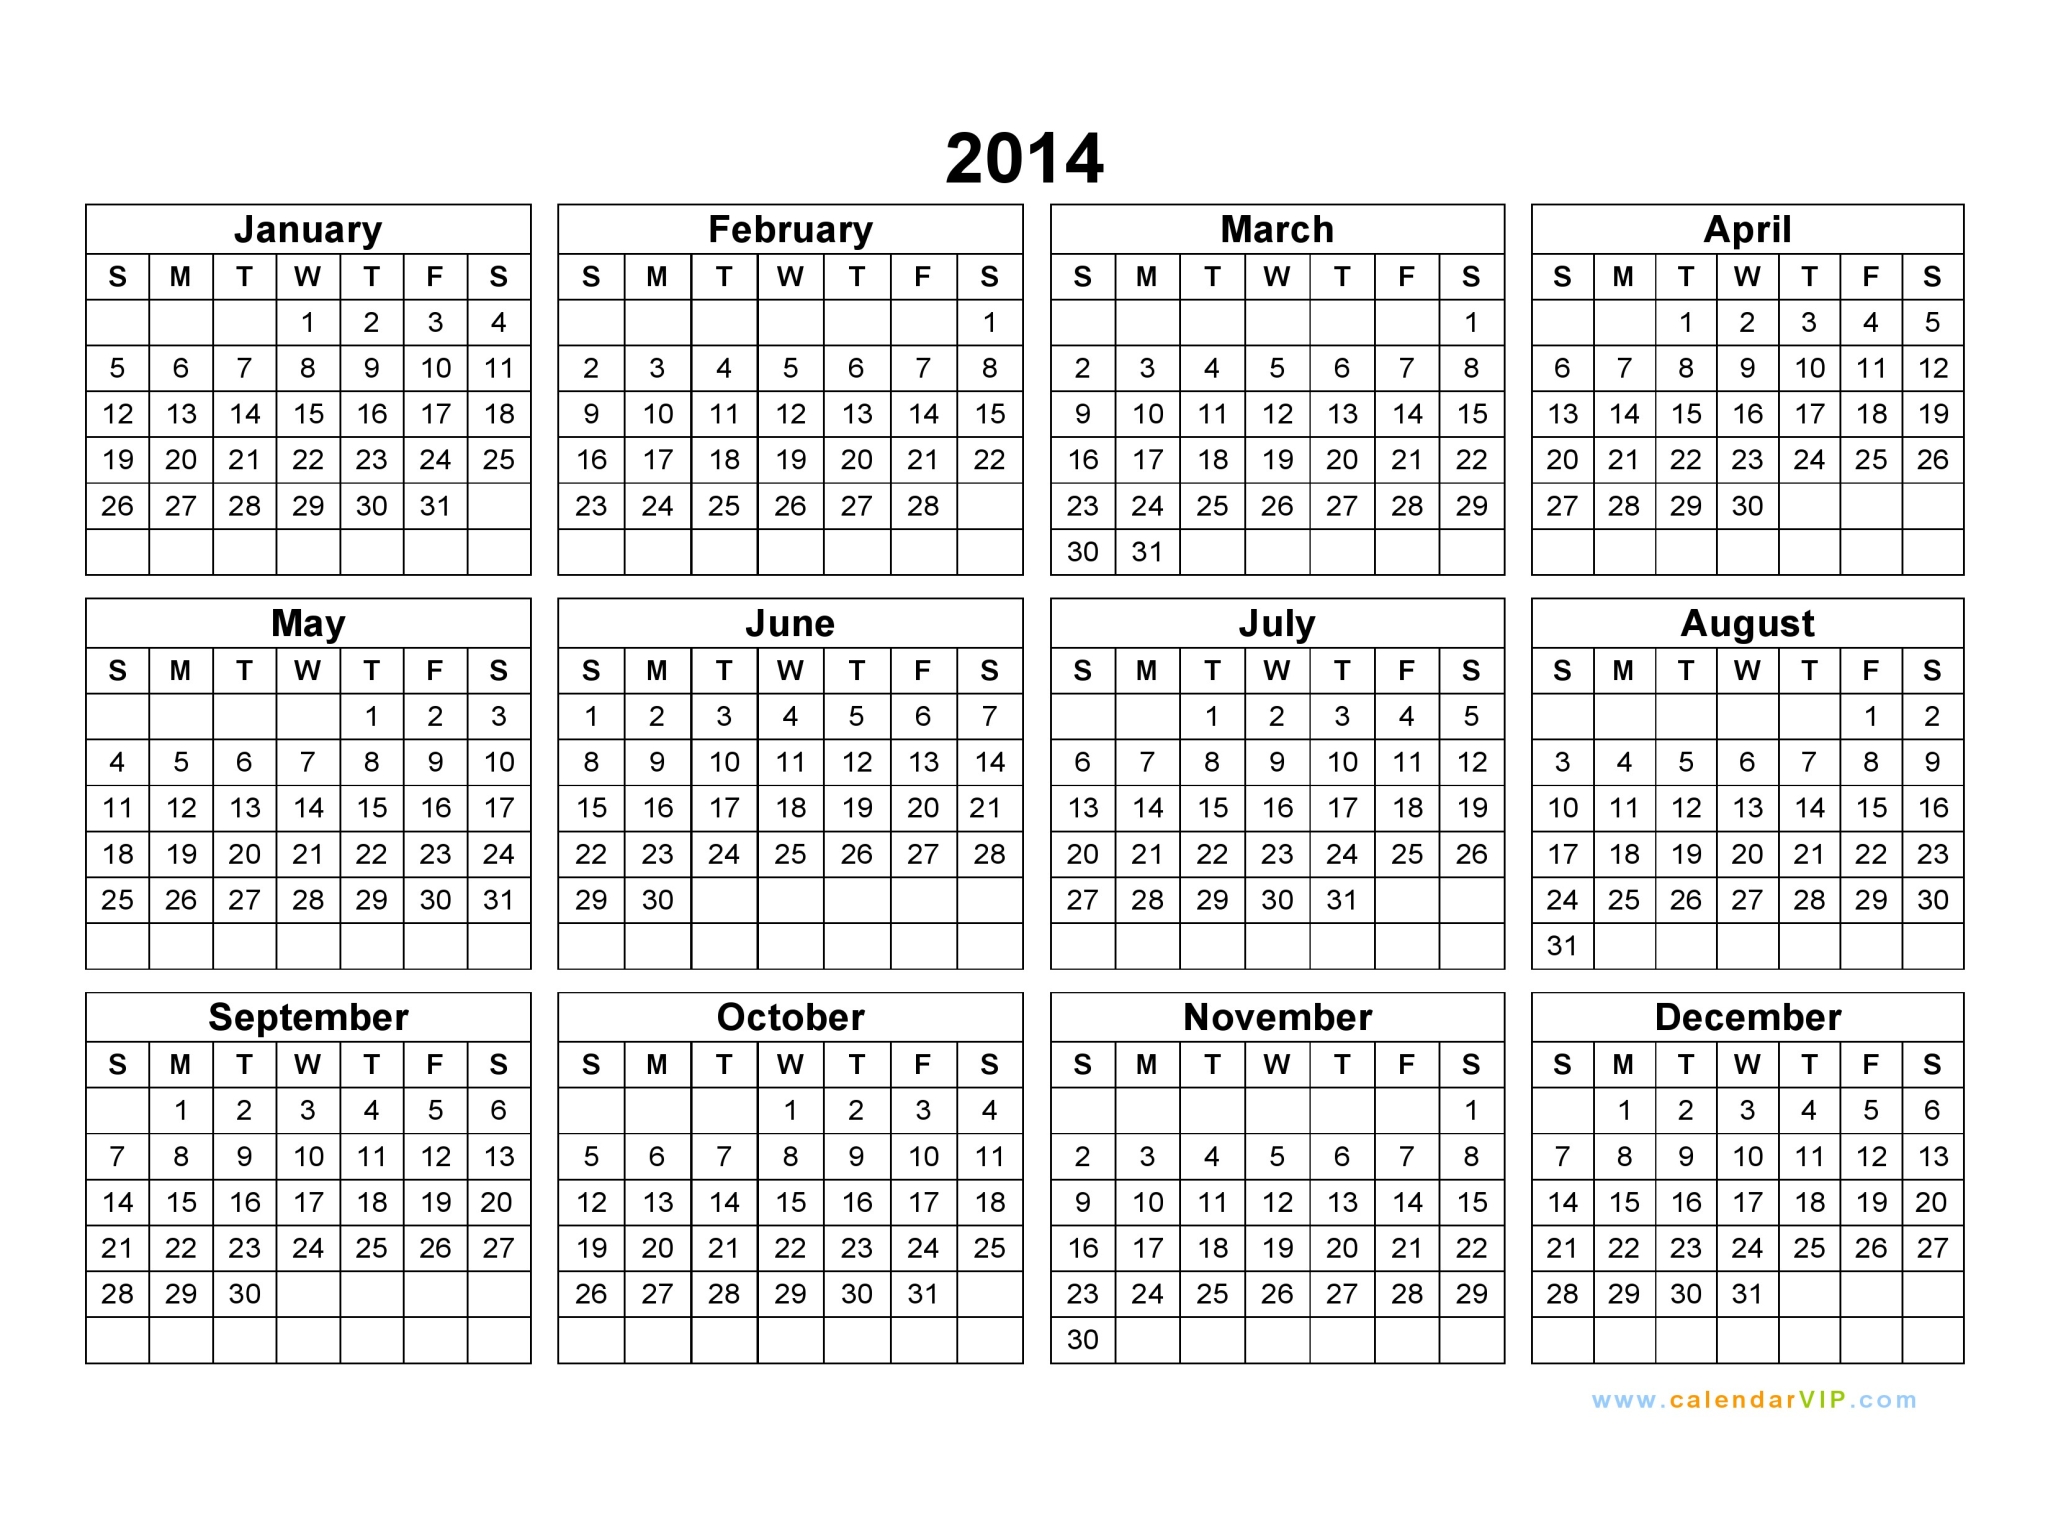 2014 Calendar - Blank Printable Calendar Template in PDF Word Excel
